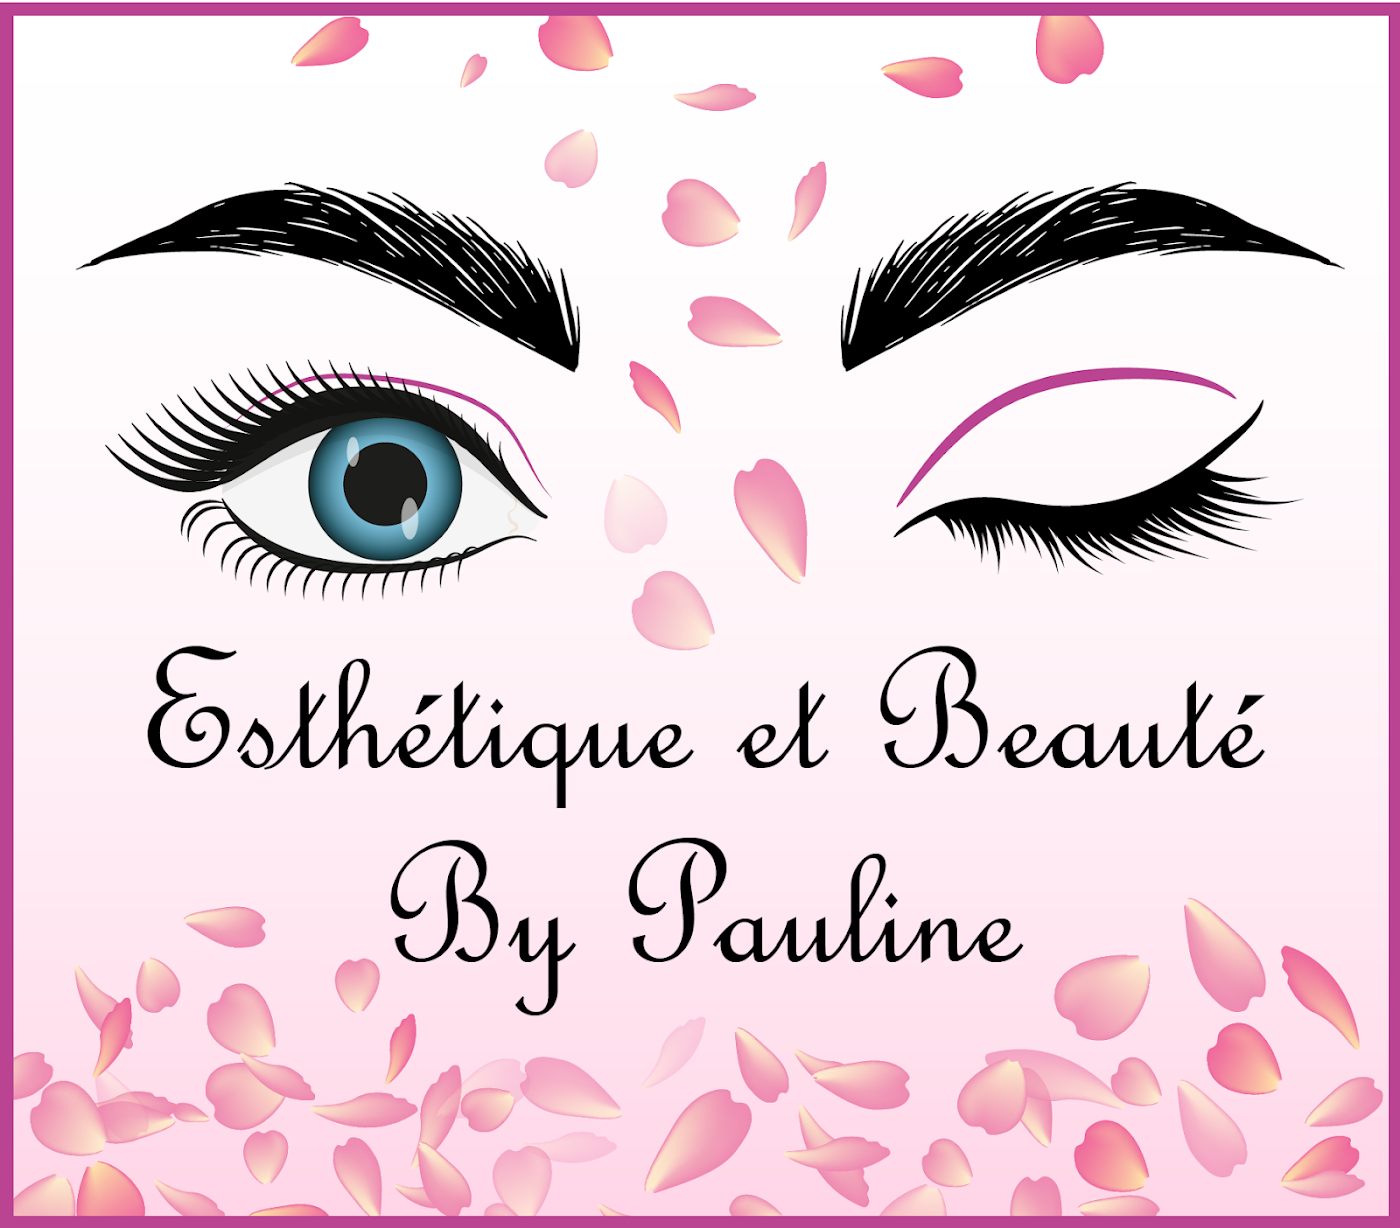 Esthétique & beauté by Pauline